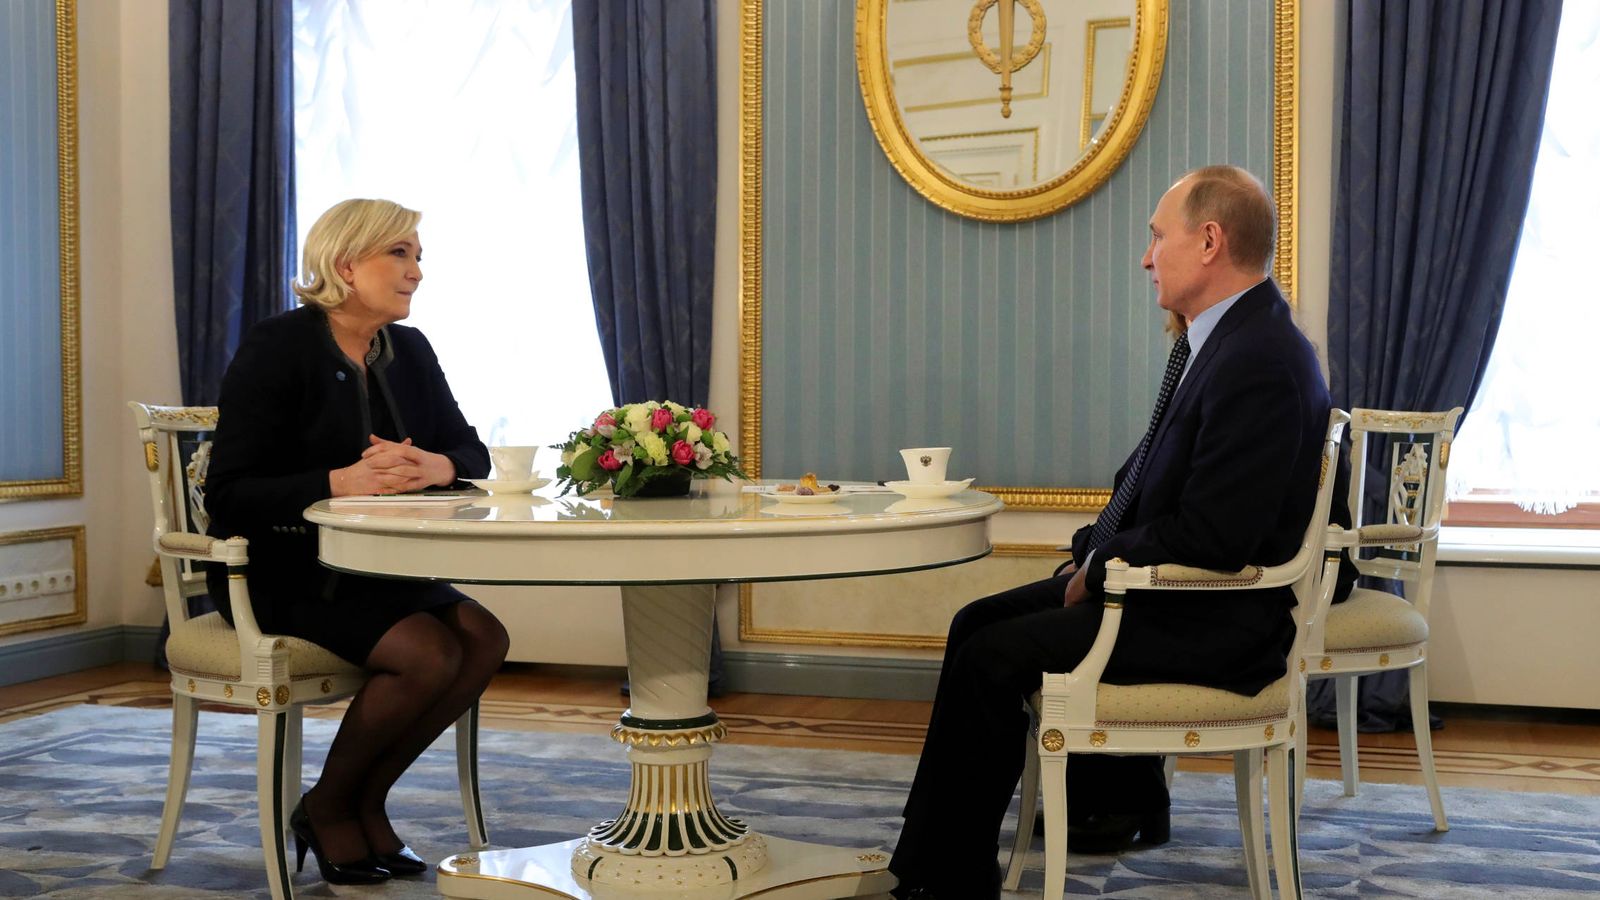 Foto: El presidente ruso Vladimir Putin con Marine Le Pen durante una reunión en Moscú, el 24 de marzo de 2017. (Reuters)